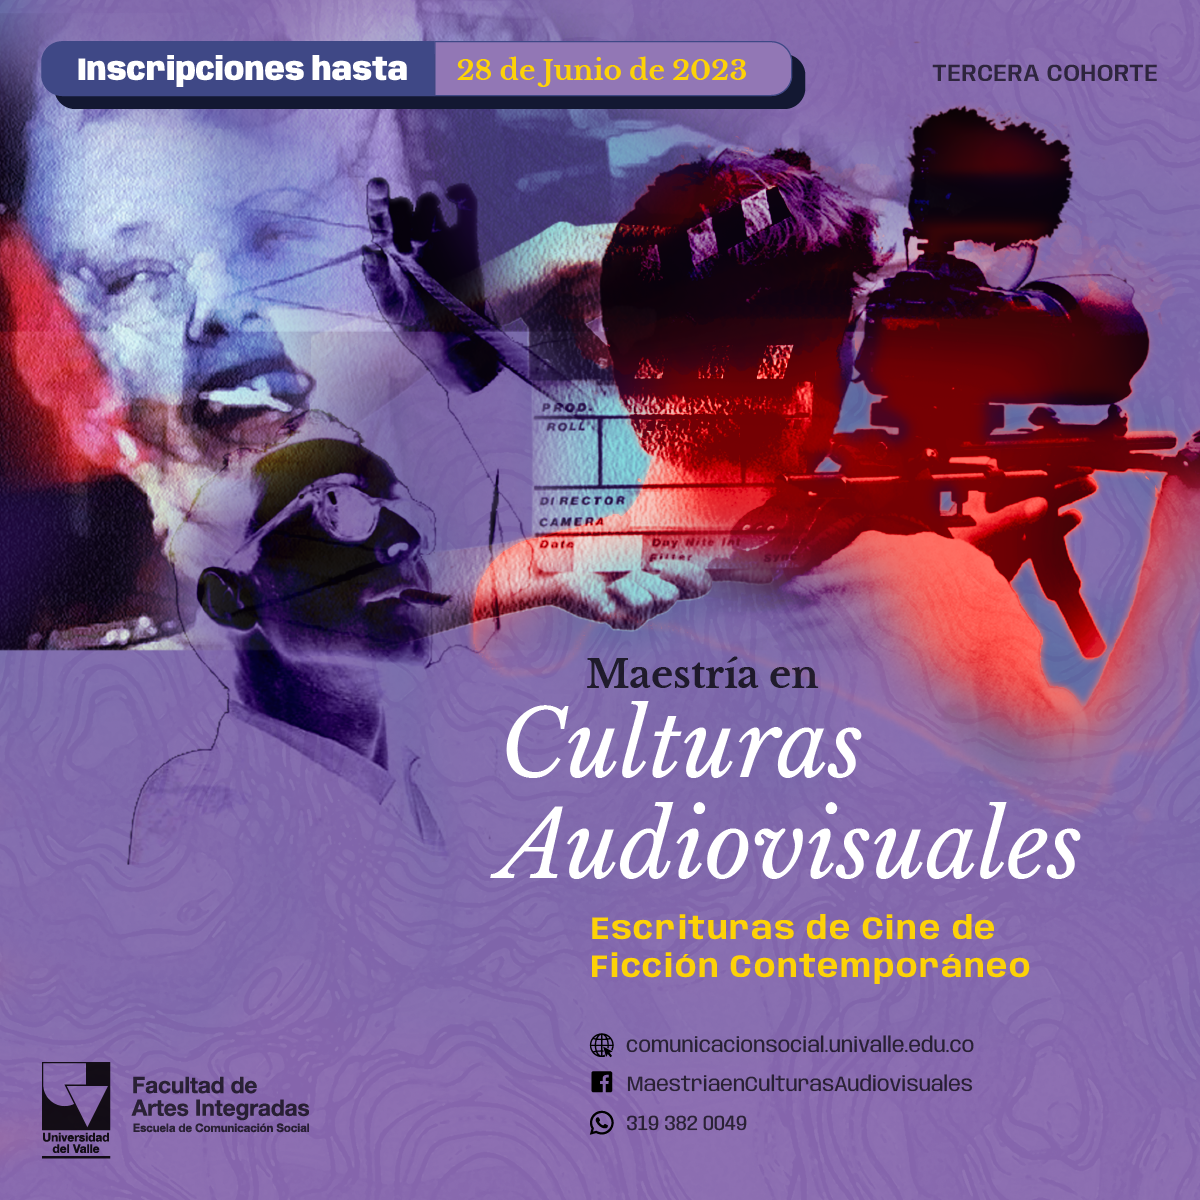 Imagen cuadrada promocional de la Maestría en Culturas Audiovisuales de la Universidad del Valle de Colombia